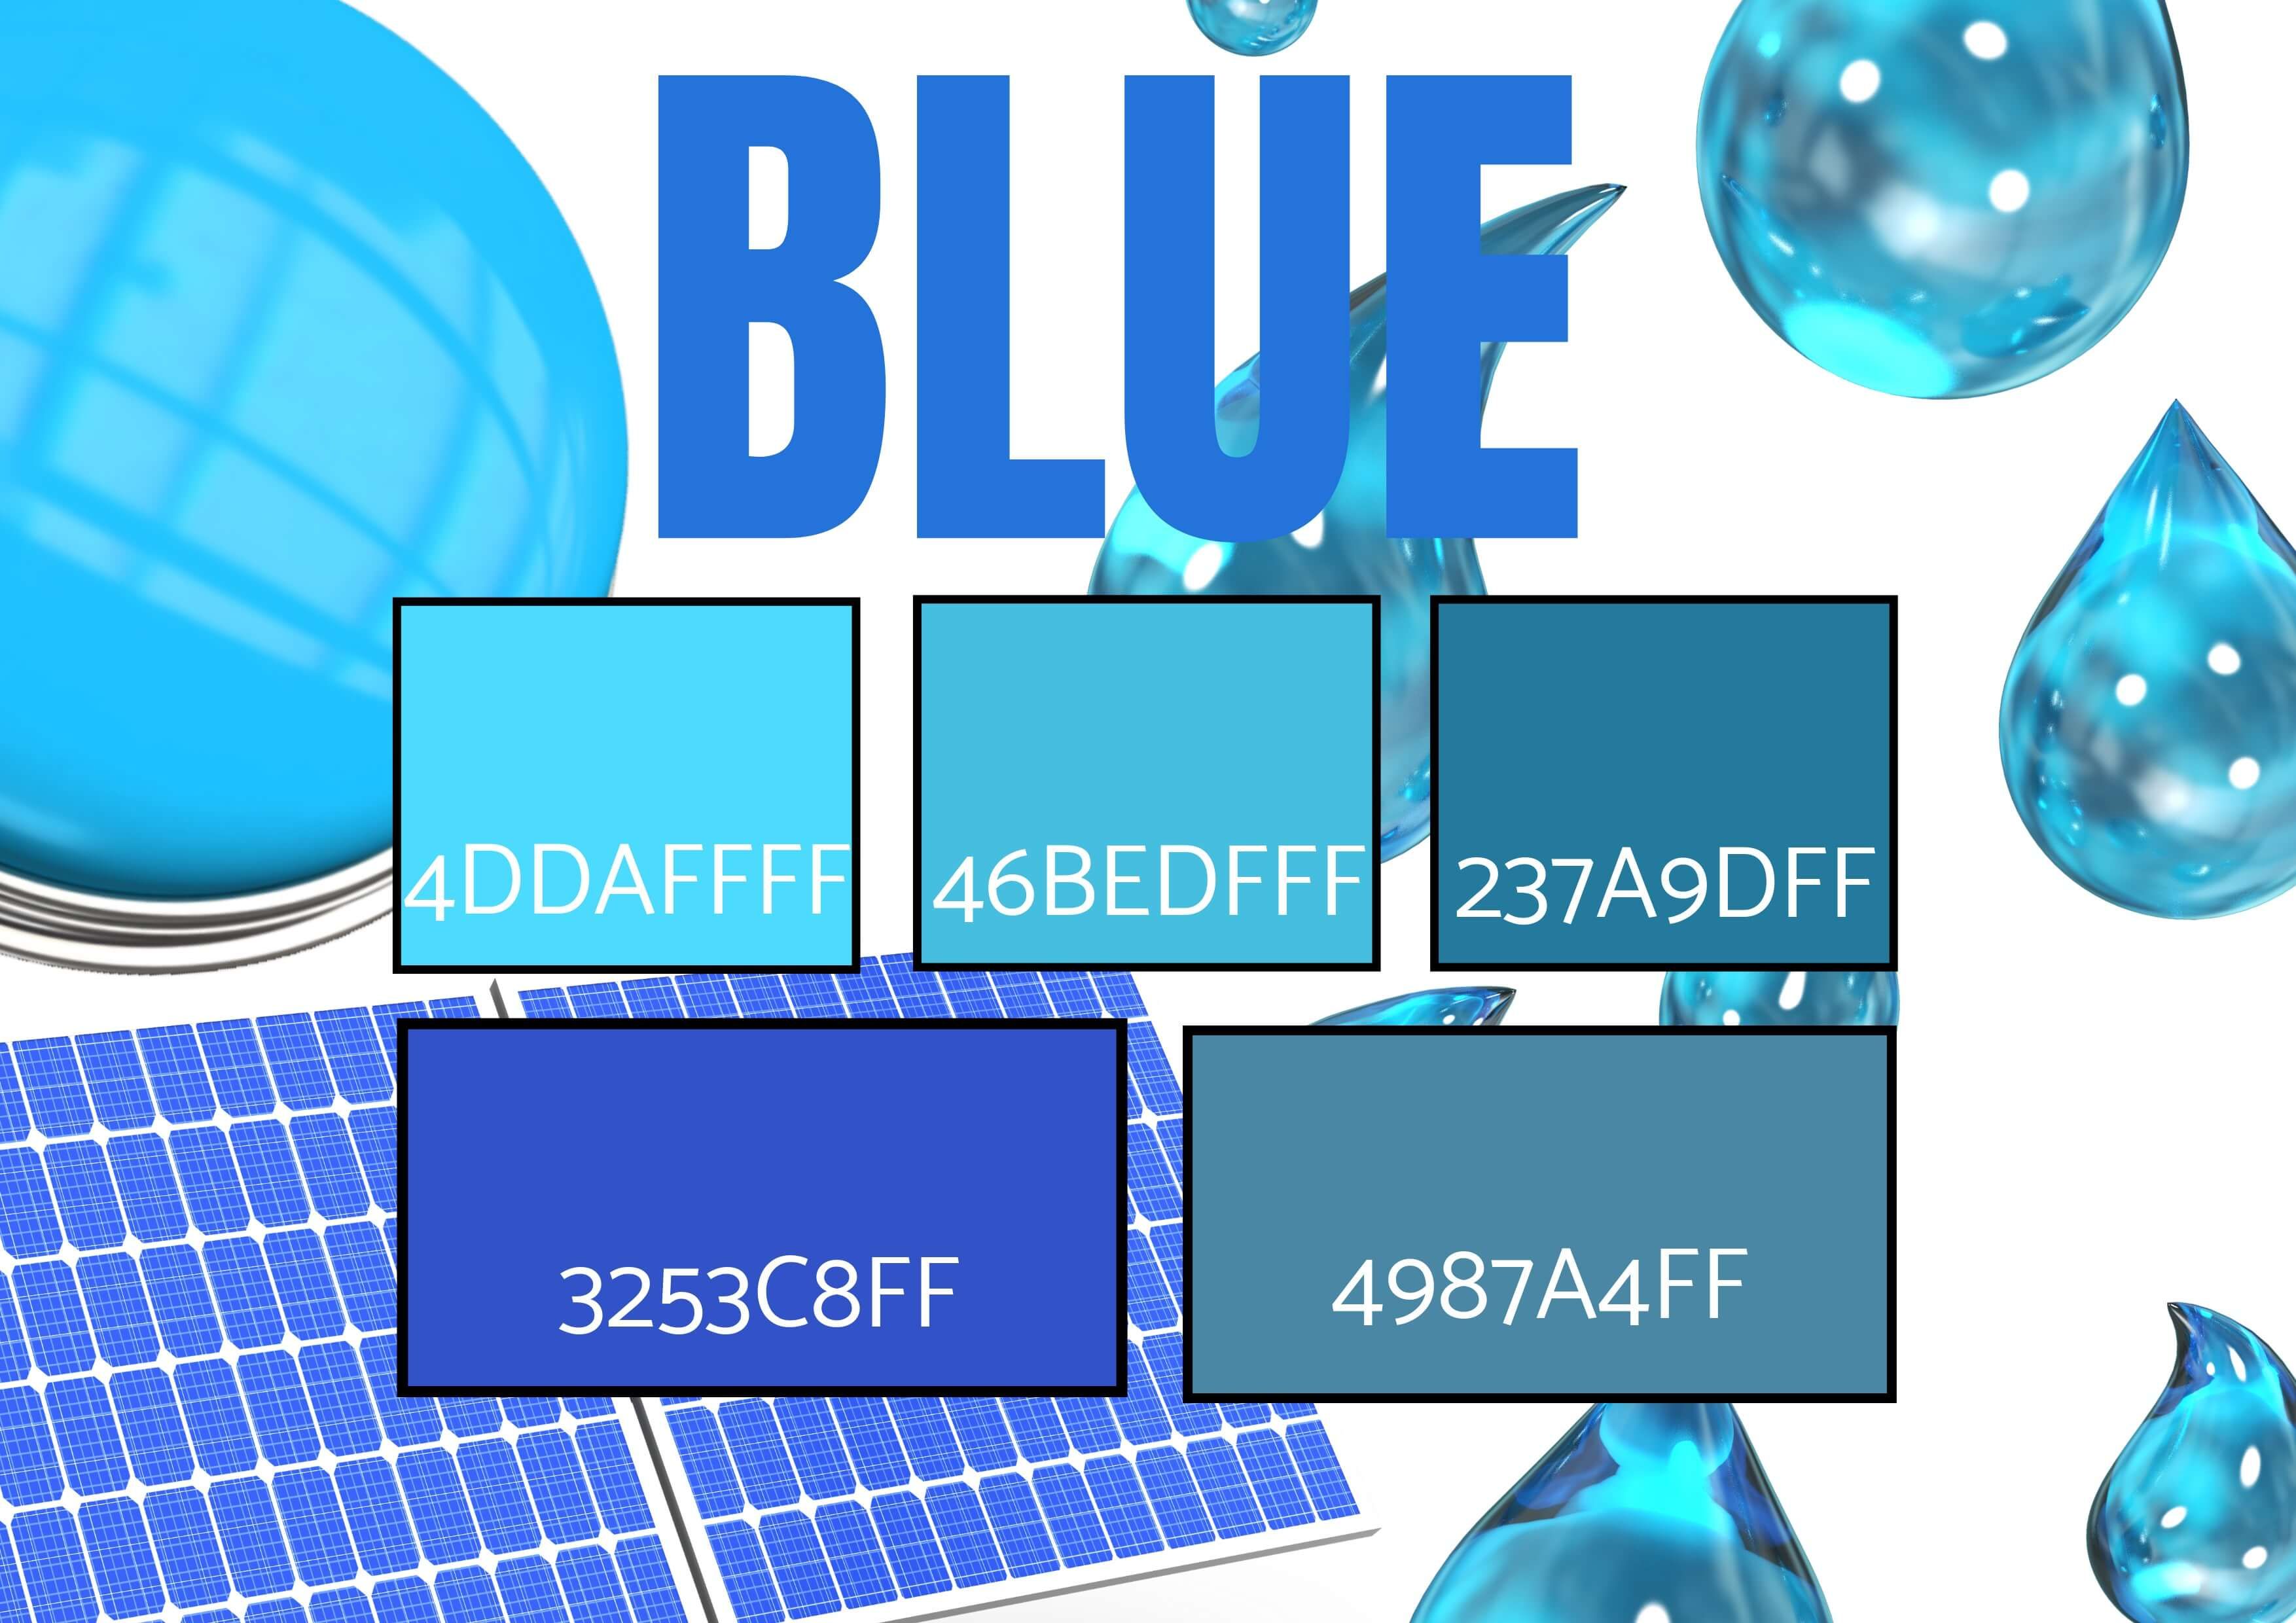 Seleção de 5 tons de azul com imagens de gotas de água, botão e painel solar - simbolismo